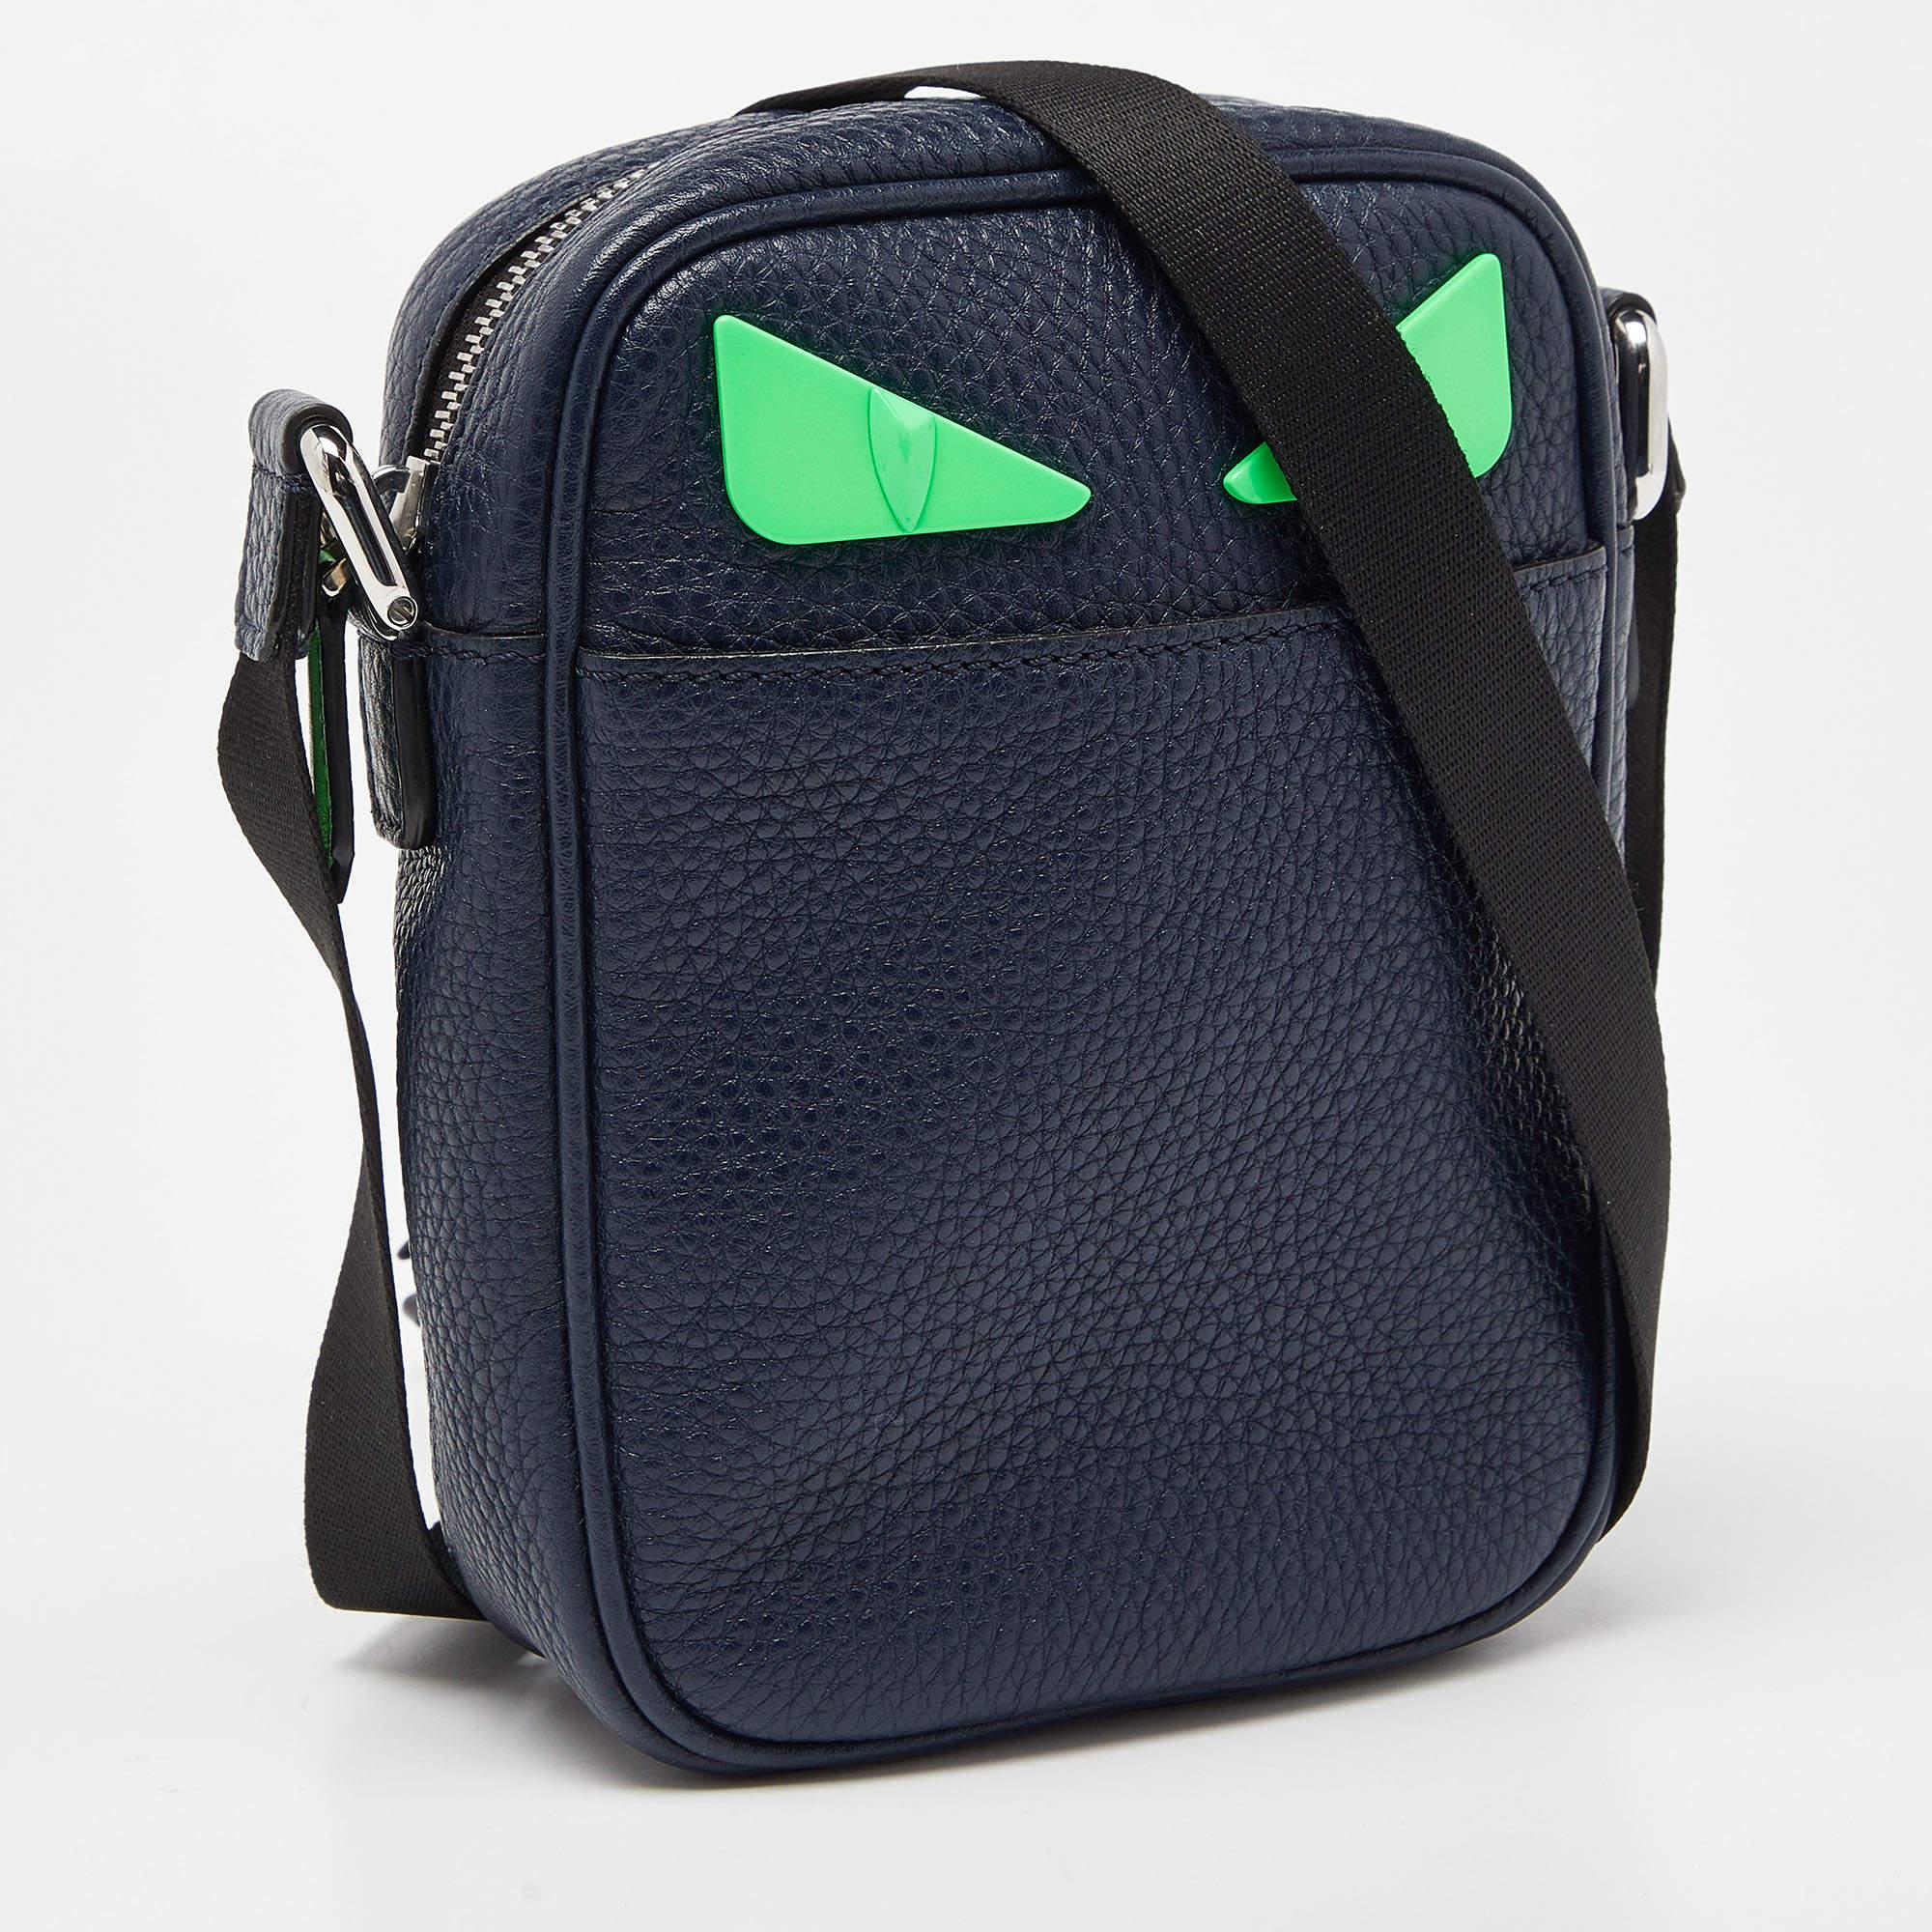 Die Tasche von Fendi ist ein stilvolles und verspieltes Accessoire. Sie ist aus luxuriösem blauem Leder gefertigt und zeigt das ikonische Monsteraugen-Design von Fendi mit Details in leuchtenden Farbtönen. Das kompakte Crossbody-Design macht sie